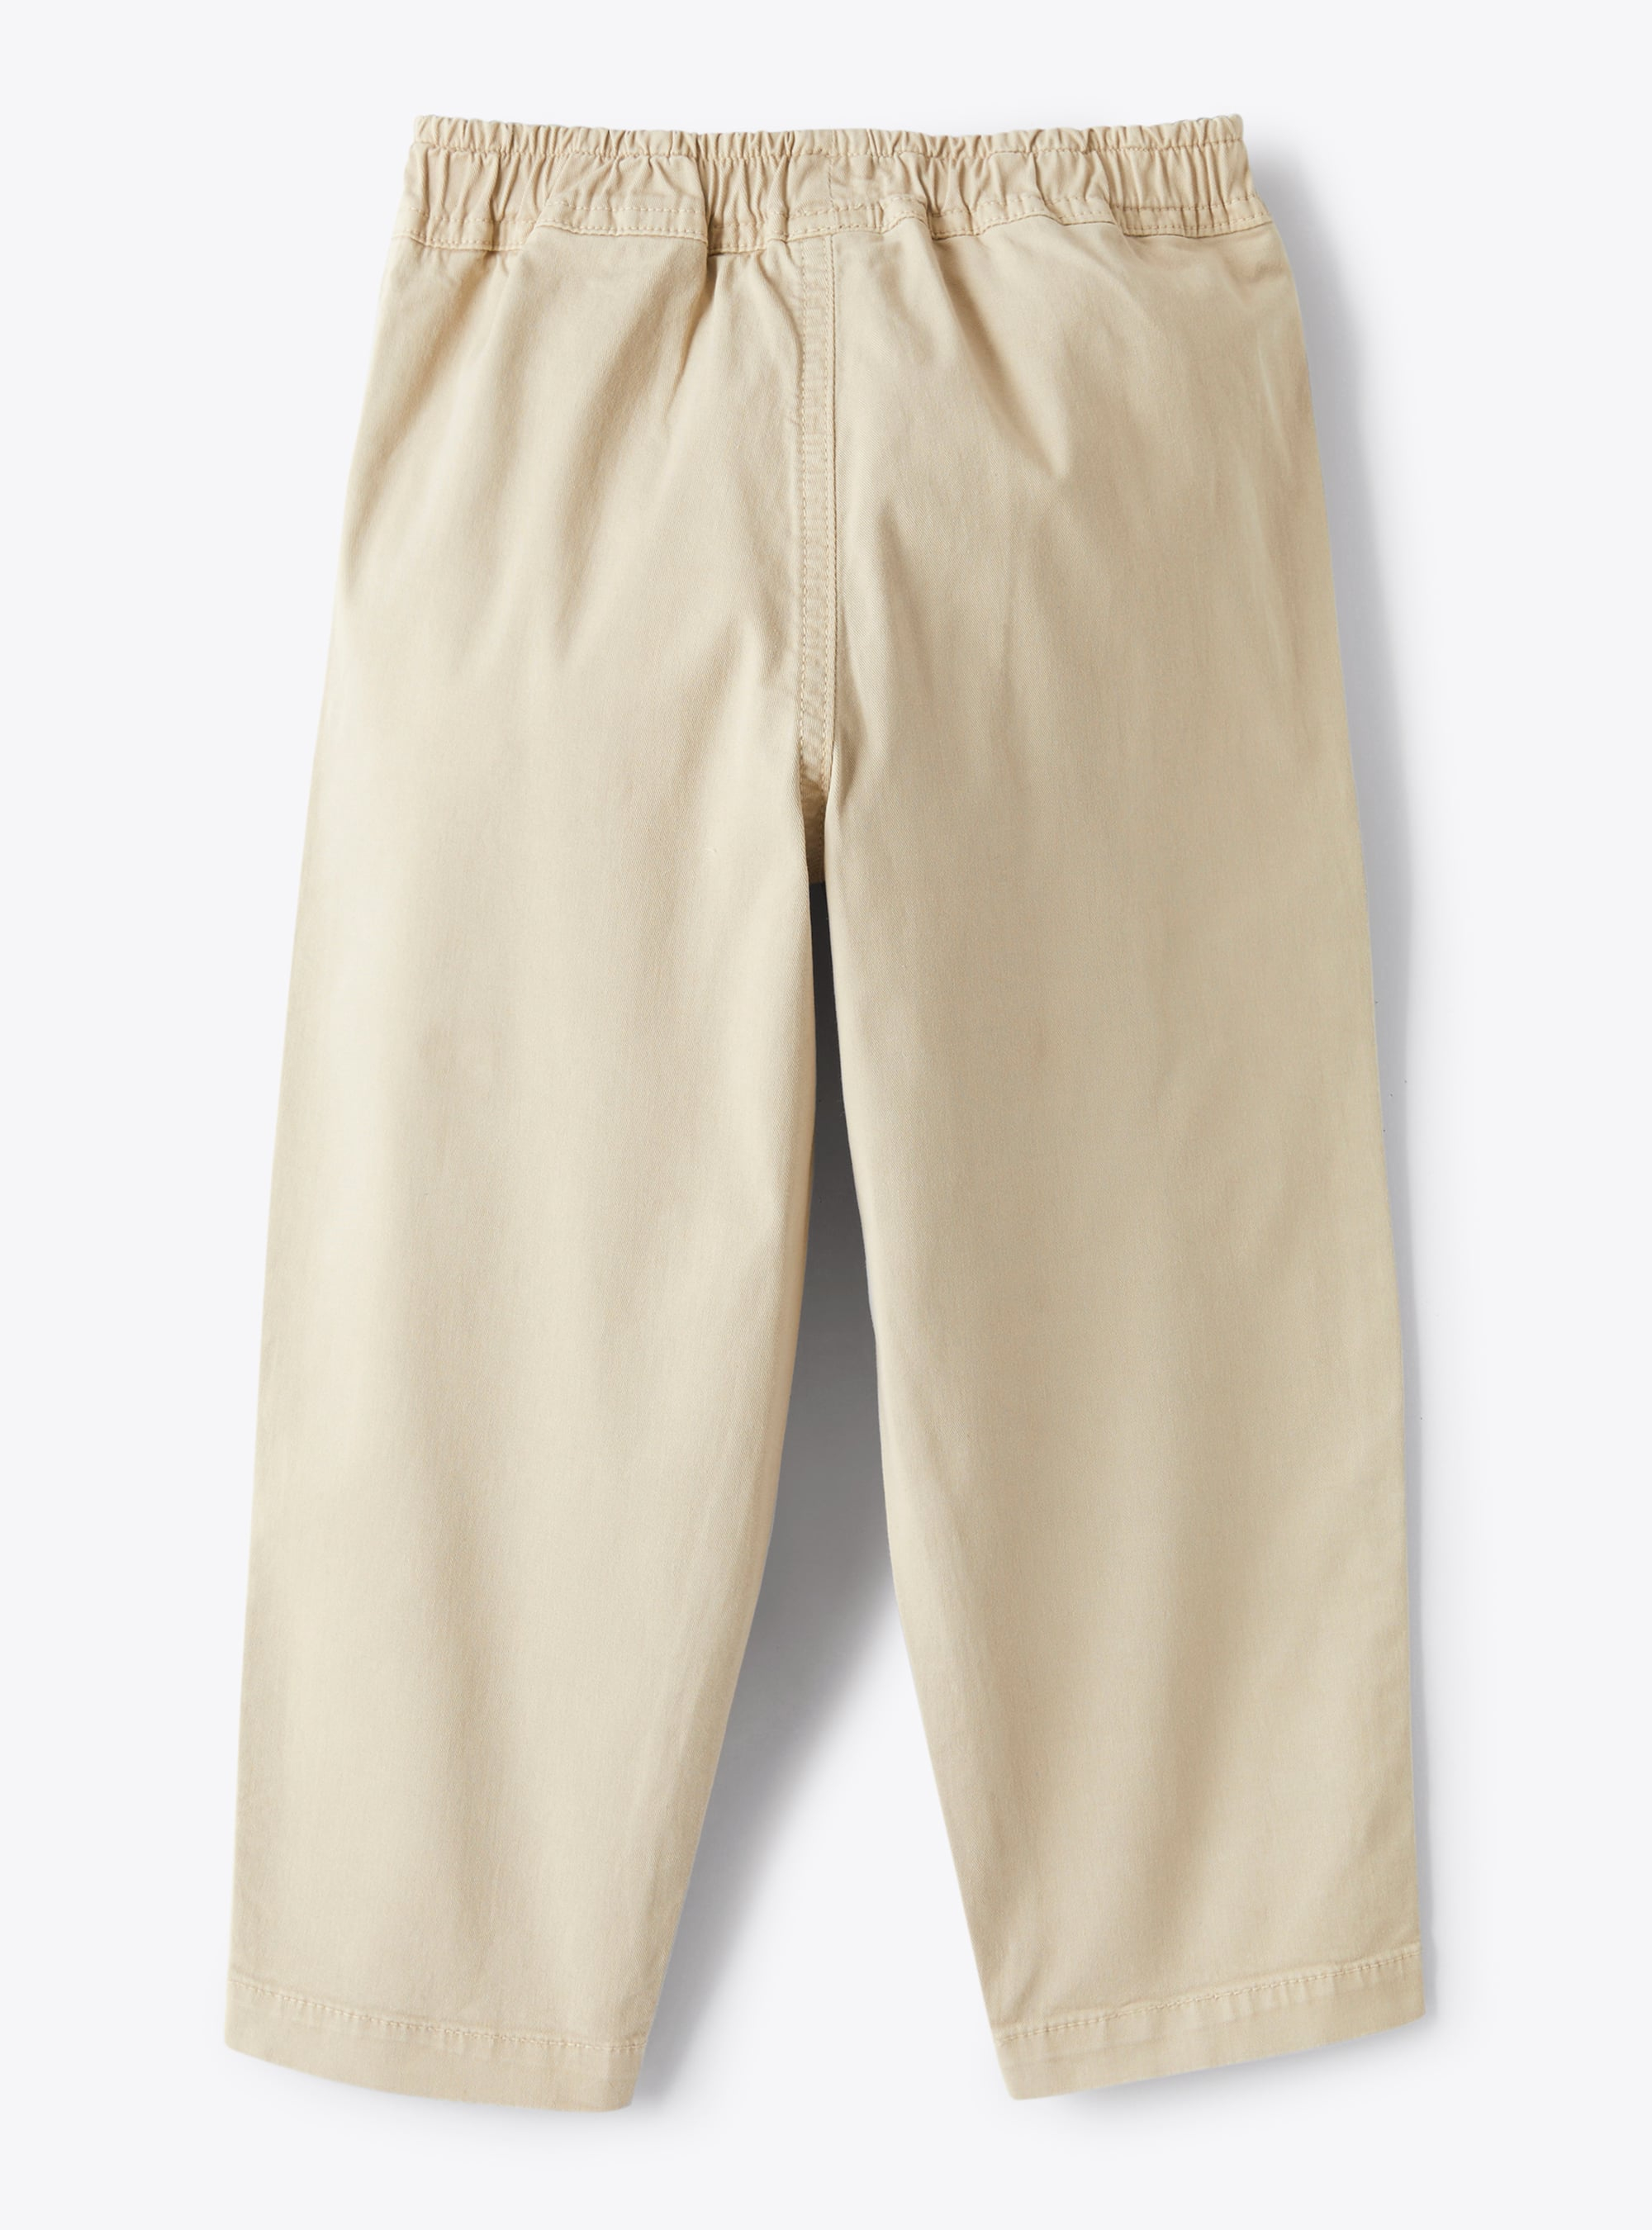 Pantalone lungo in gabardina tinto capo color avena - Marrone | Il Gufo